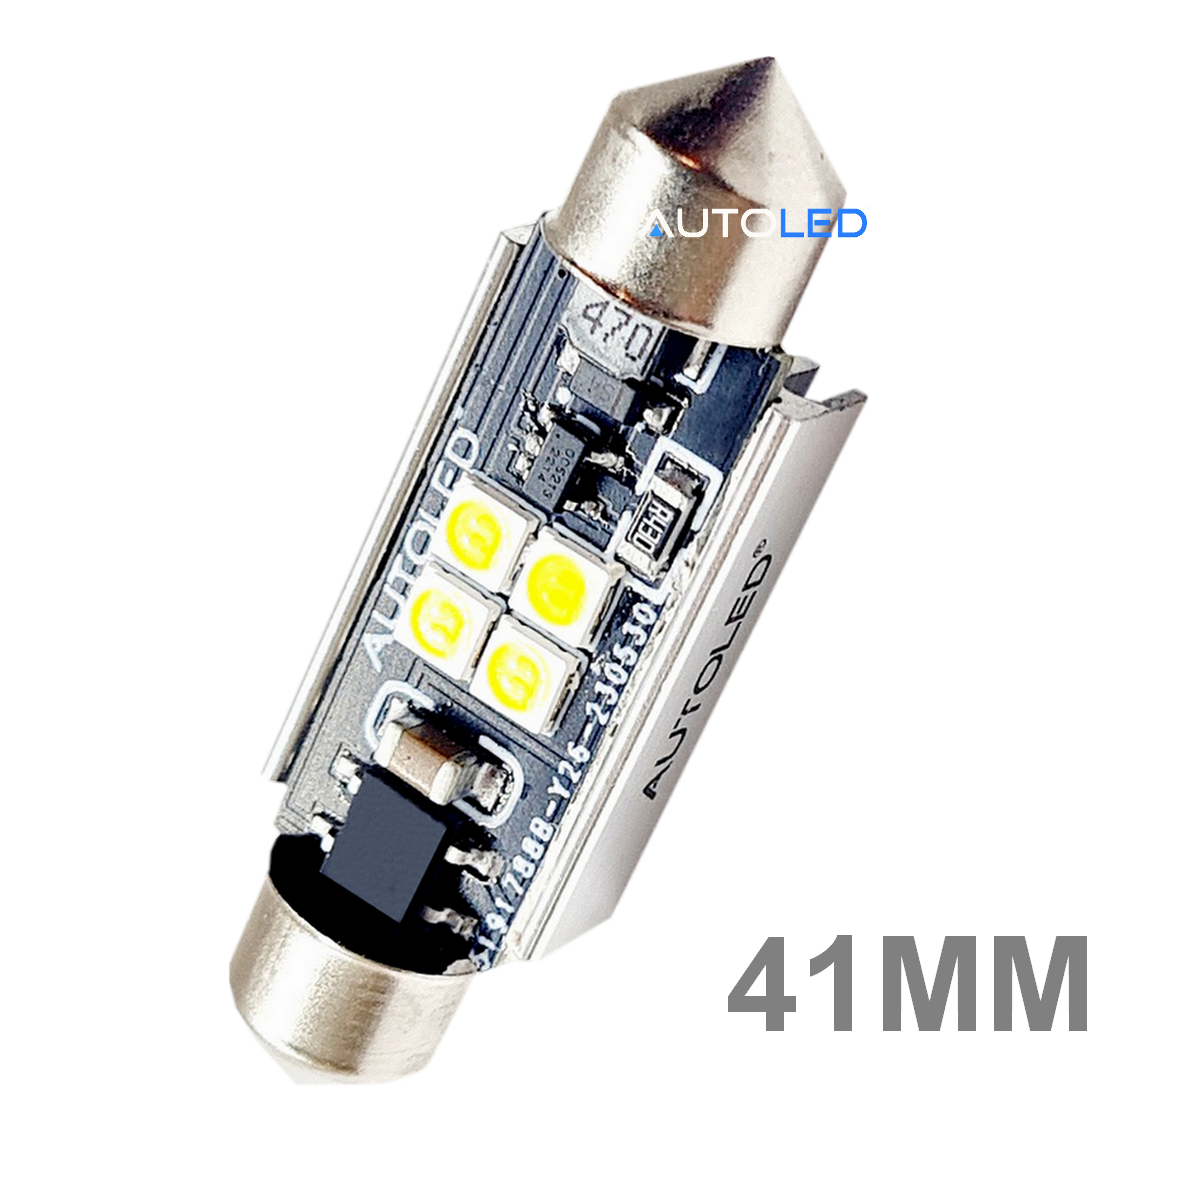 ampoule LED C5W 41MM 24V ANTI ERREUR- CAMION ET VOITURE-autoled-0281-7